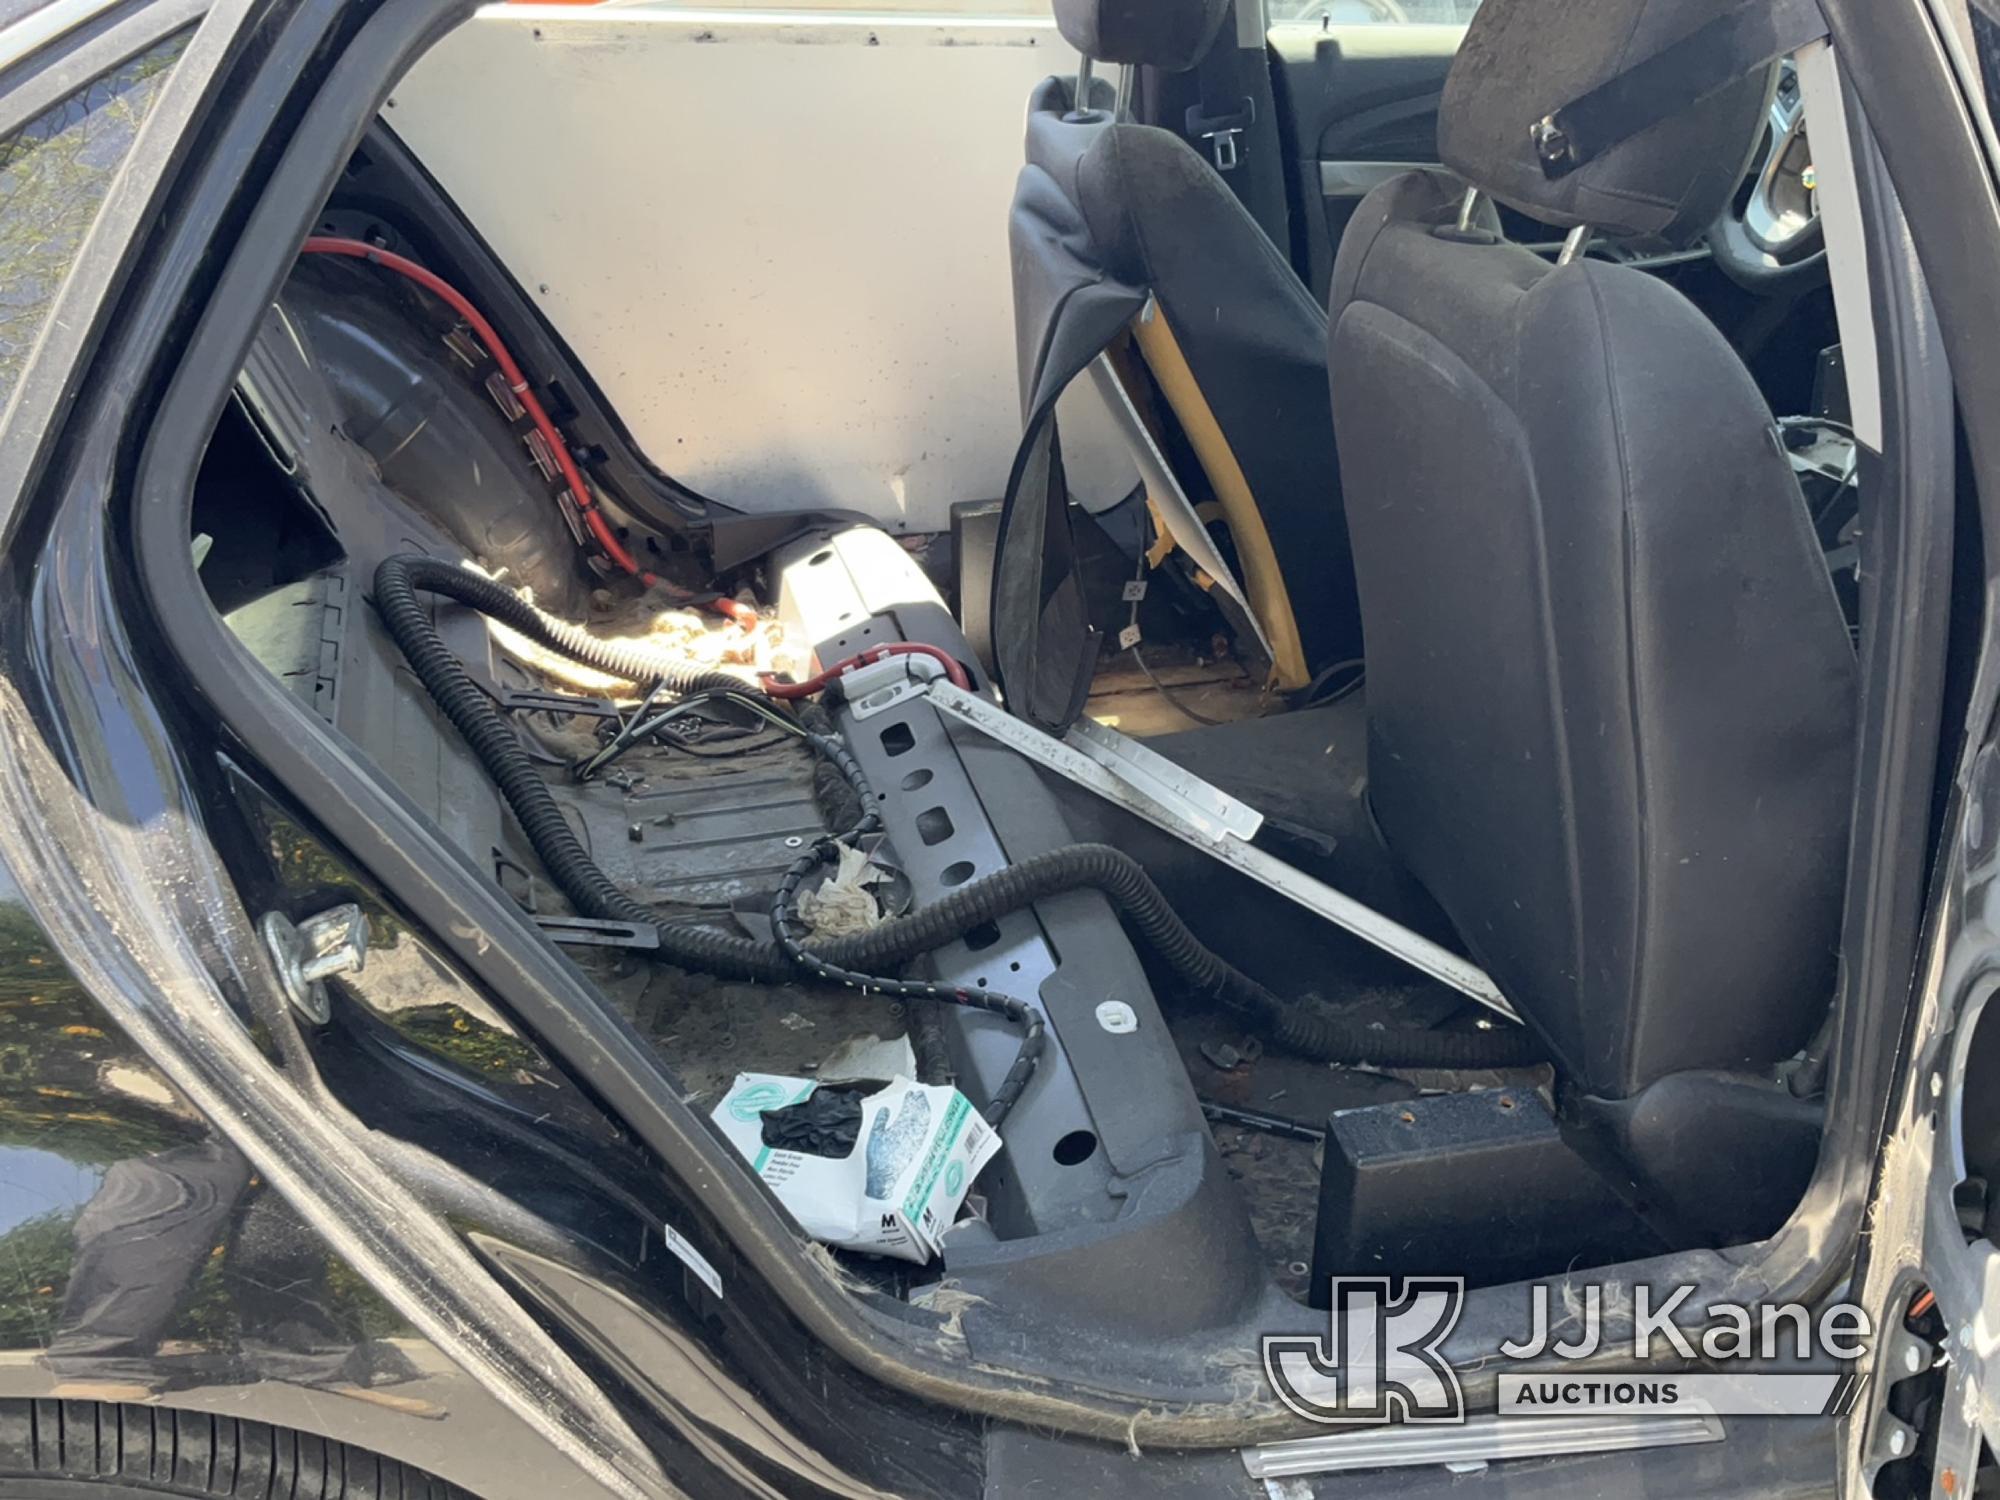 (Jurupa Valley, CA) 2014 Chevrolet Caprice 4-Door Sedan Runs & Moves, Air Bag Light Is On, Stripped